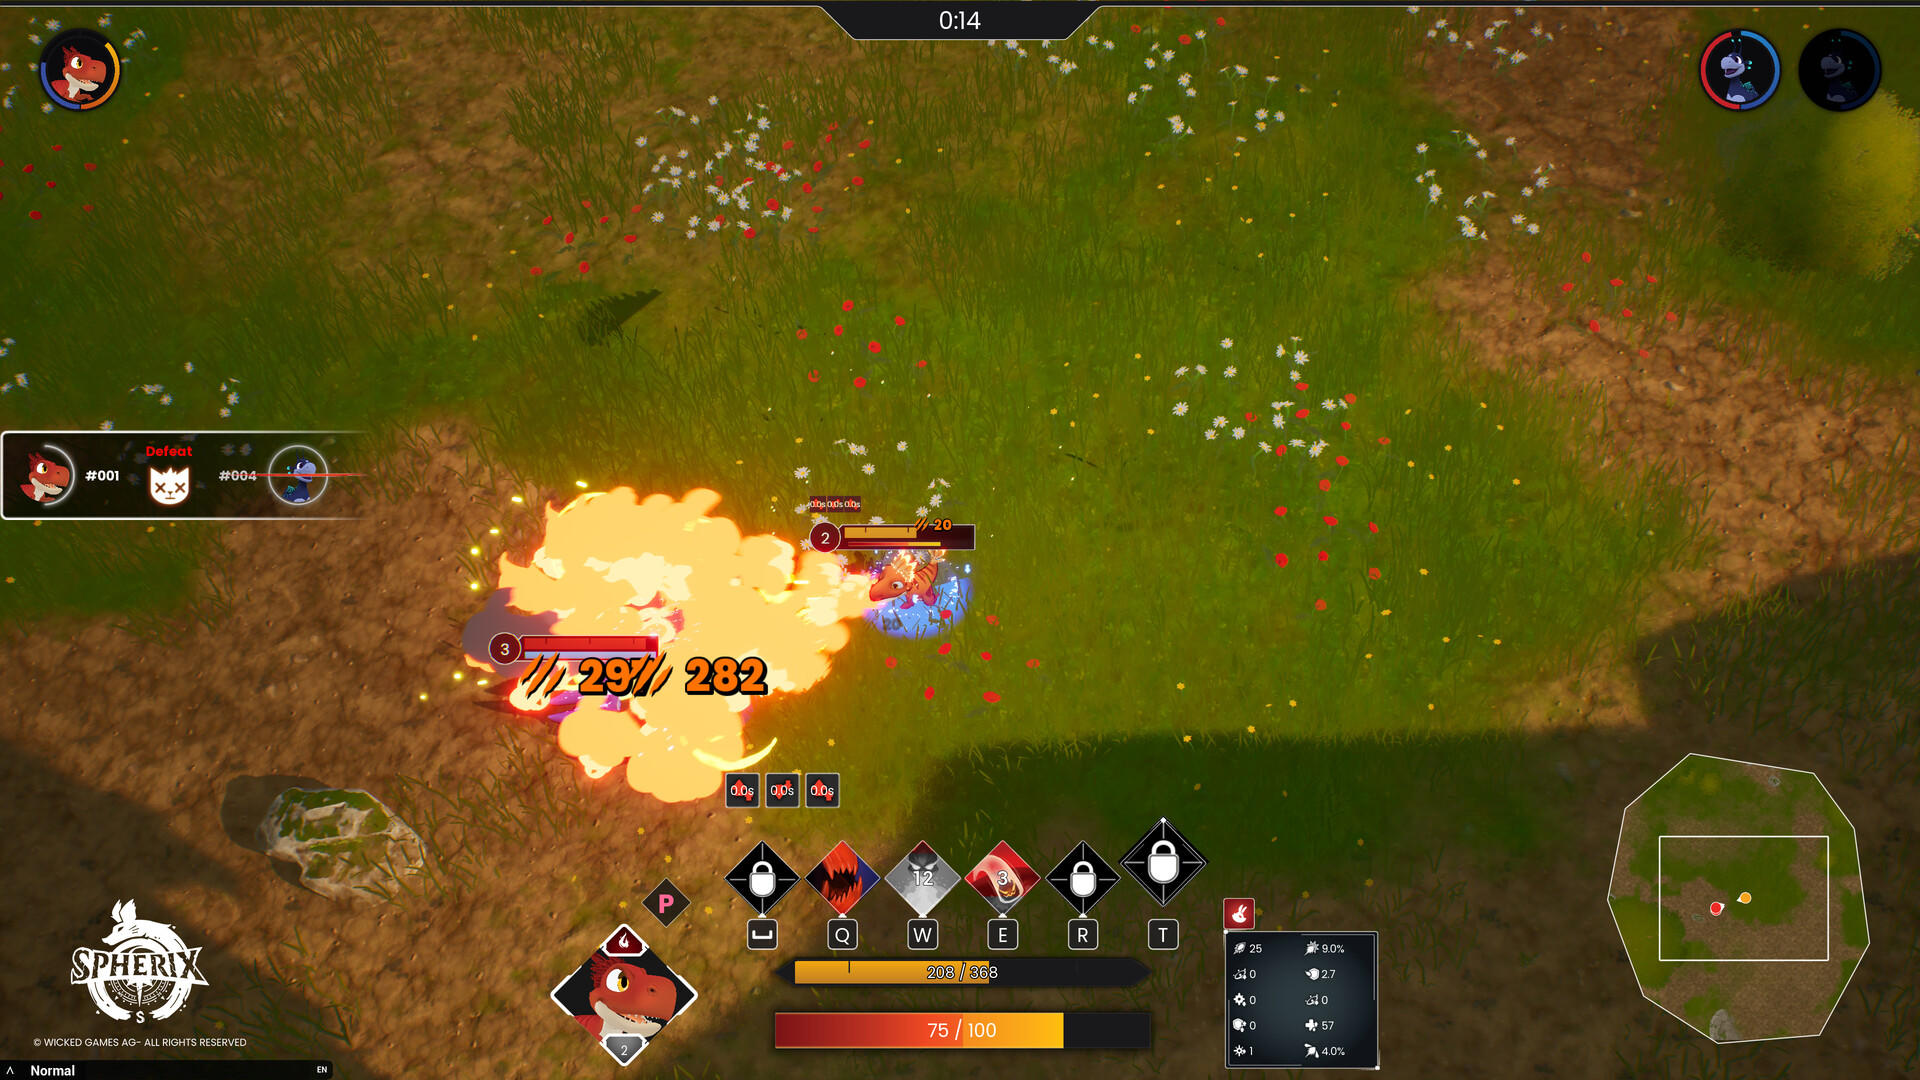 Screenshot of Spherix